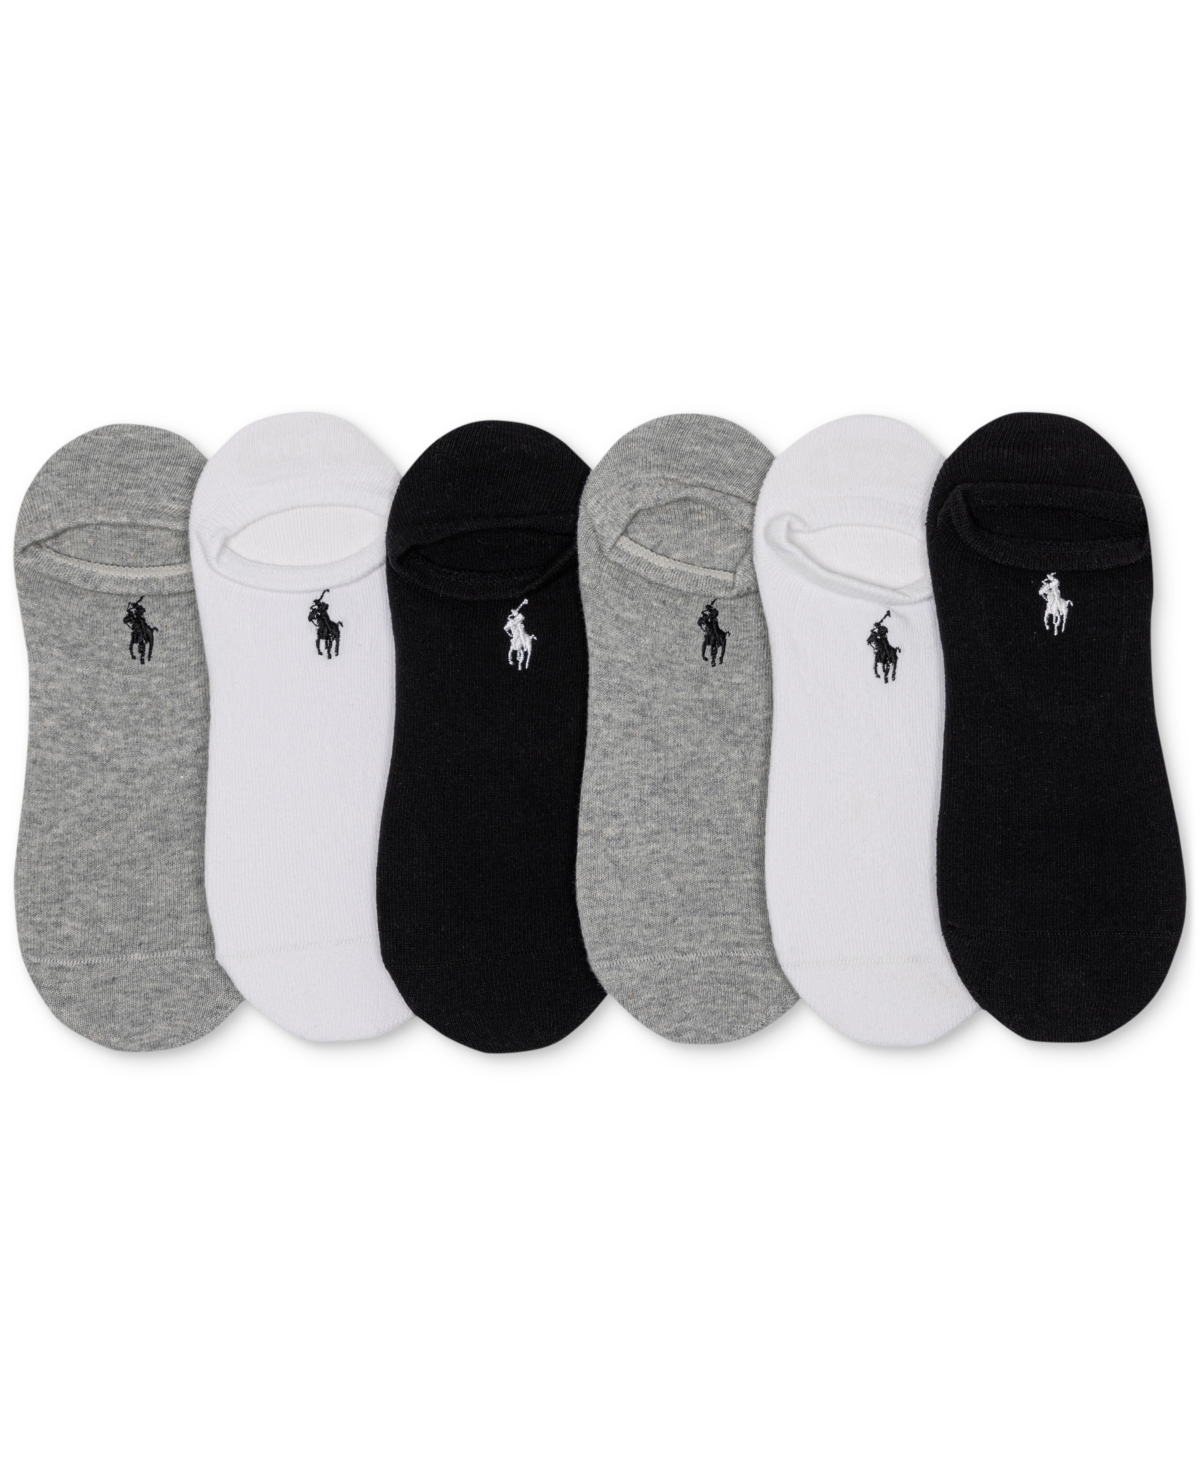 Polo Ralph Lauren Women's 6-pk. No-show Liner Socks In Grey Assortment